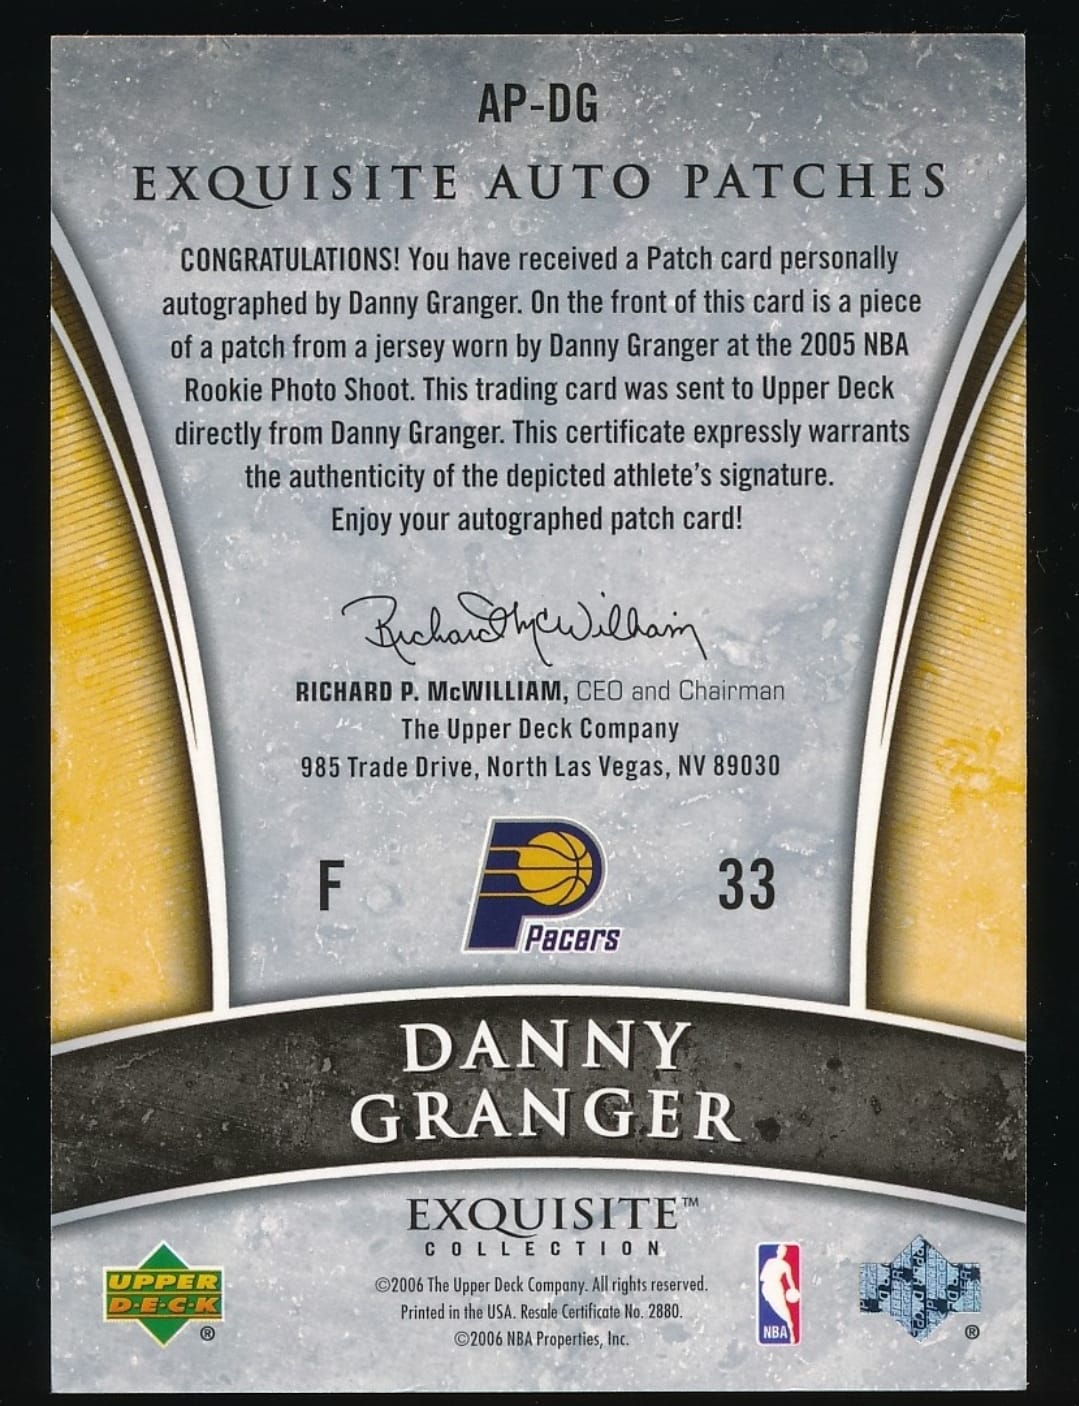 2006-07 Exquisite Auto Patches No. AP-DG Danny Granger Exquisite Collection UD 33 /100